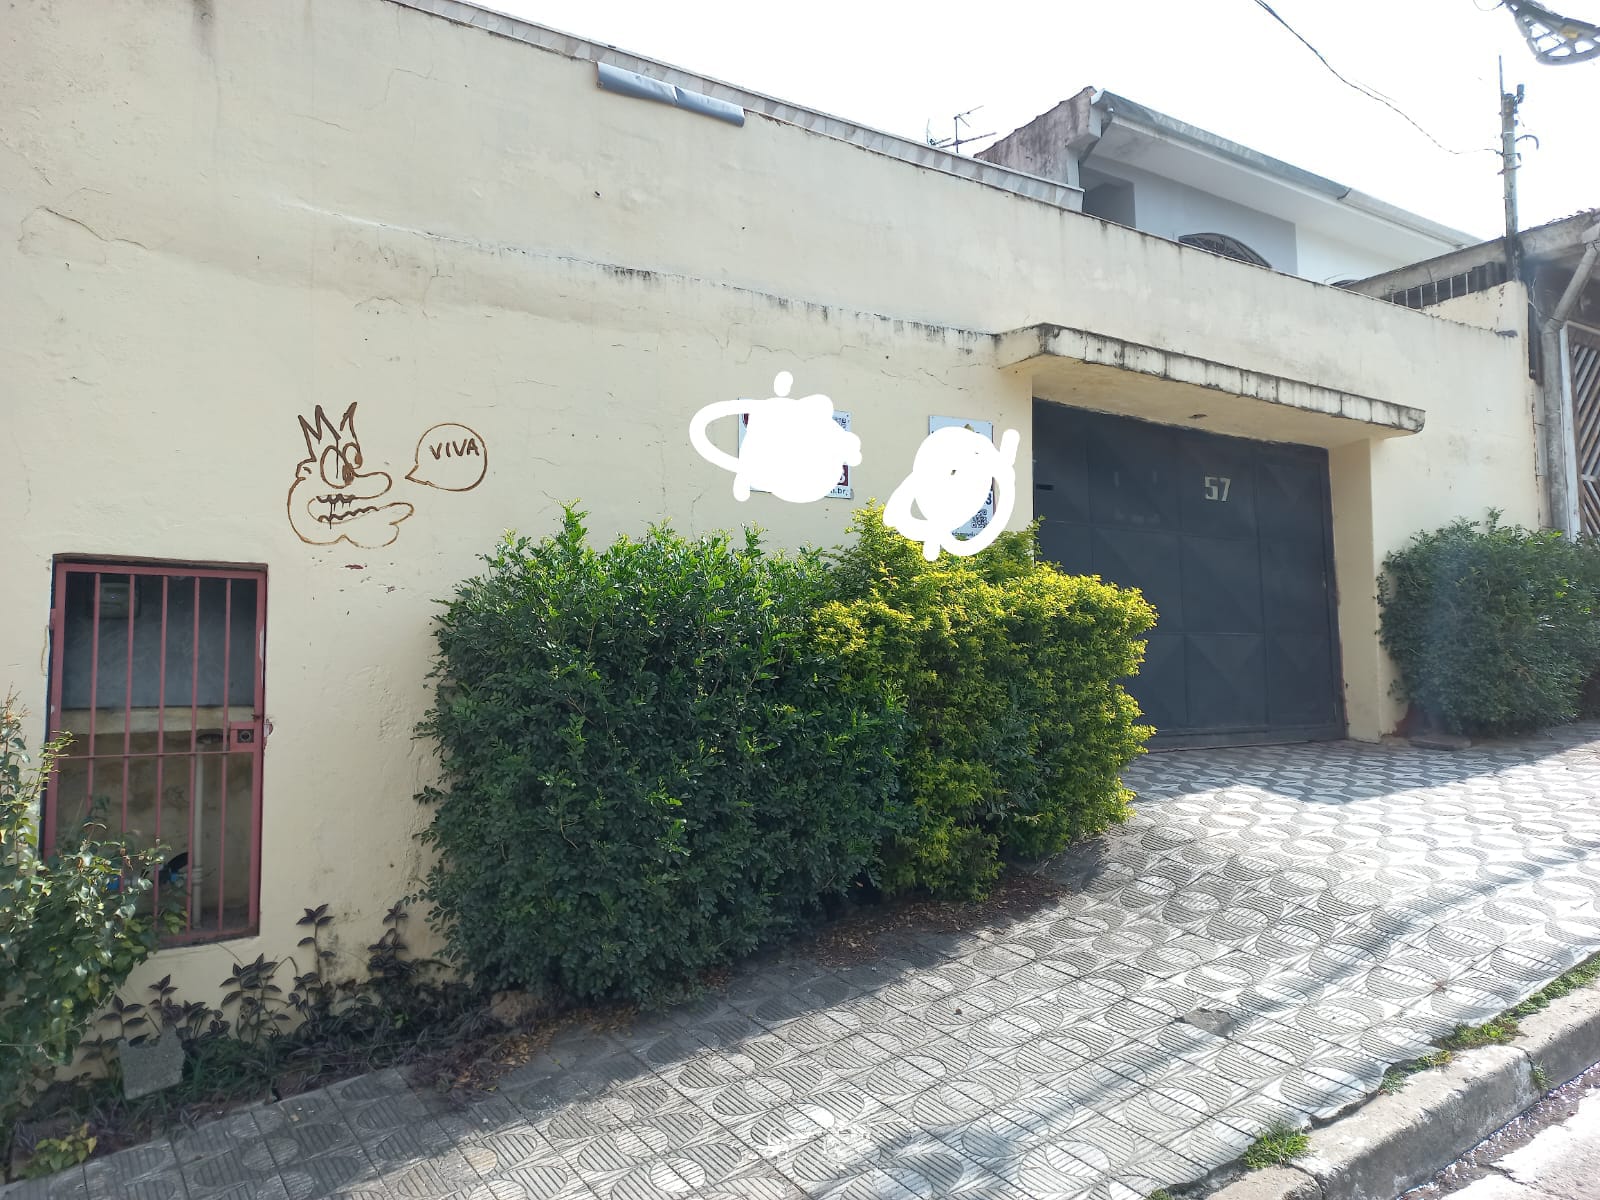 Belíssima casa com edícula a venda em SP .. Local excelente Ponto | São Paulo - SP  | código 1013